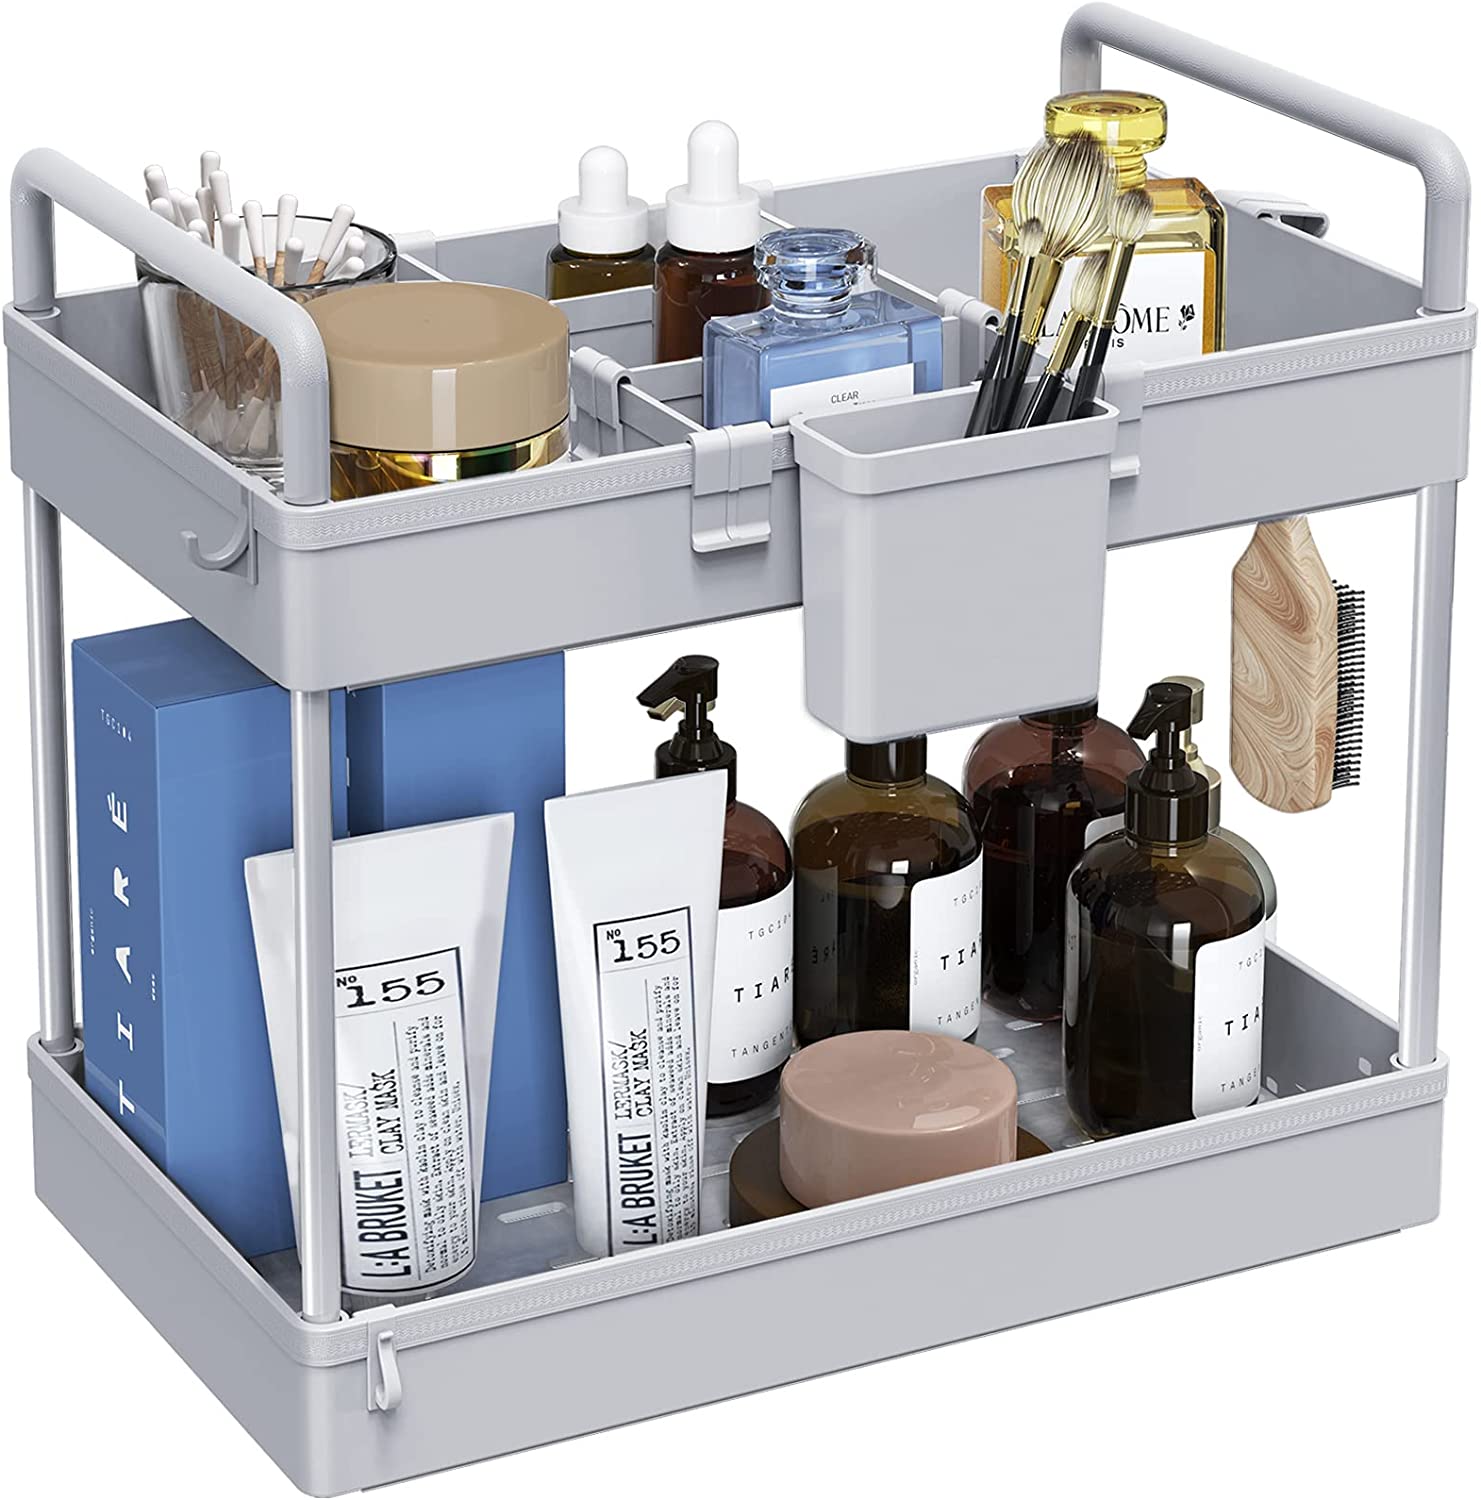 3 Pack Under Sink Organizers And Storage With Dividers,2-Tier Bathroom Organizer  Under Sink,Kitchen